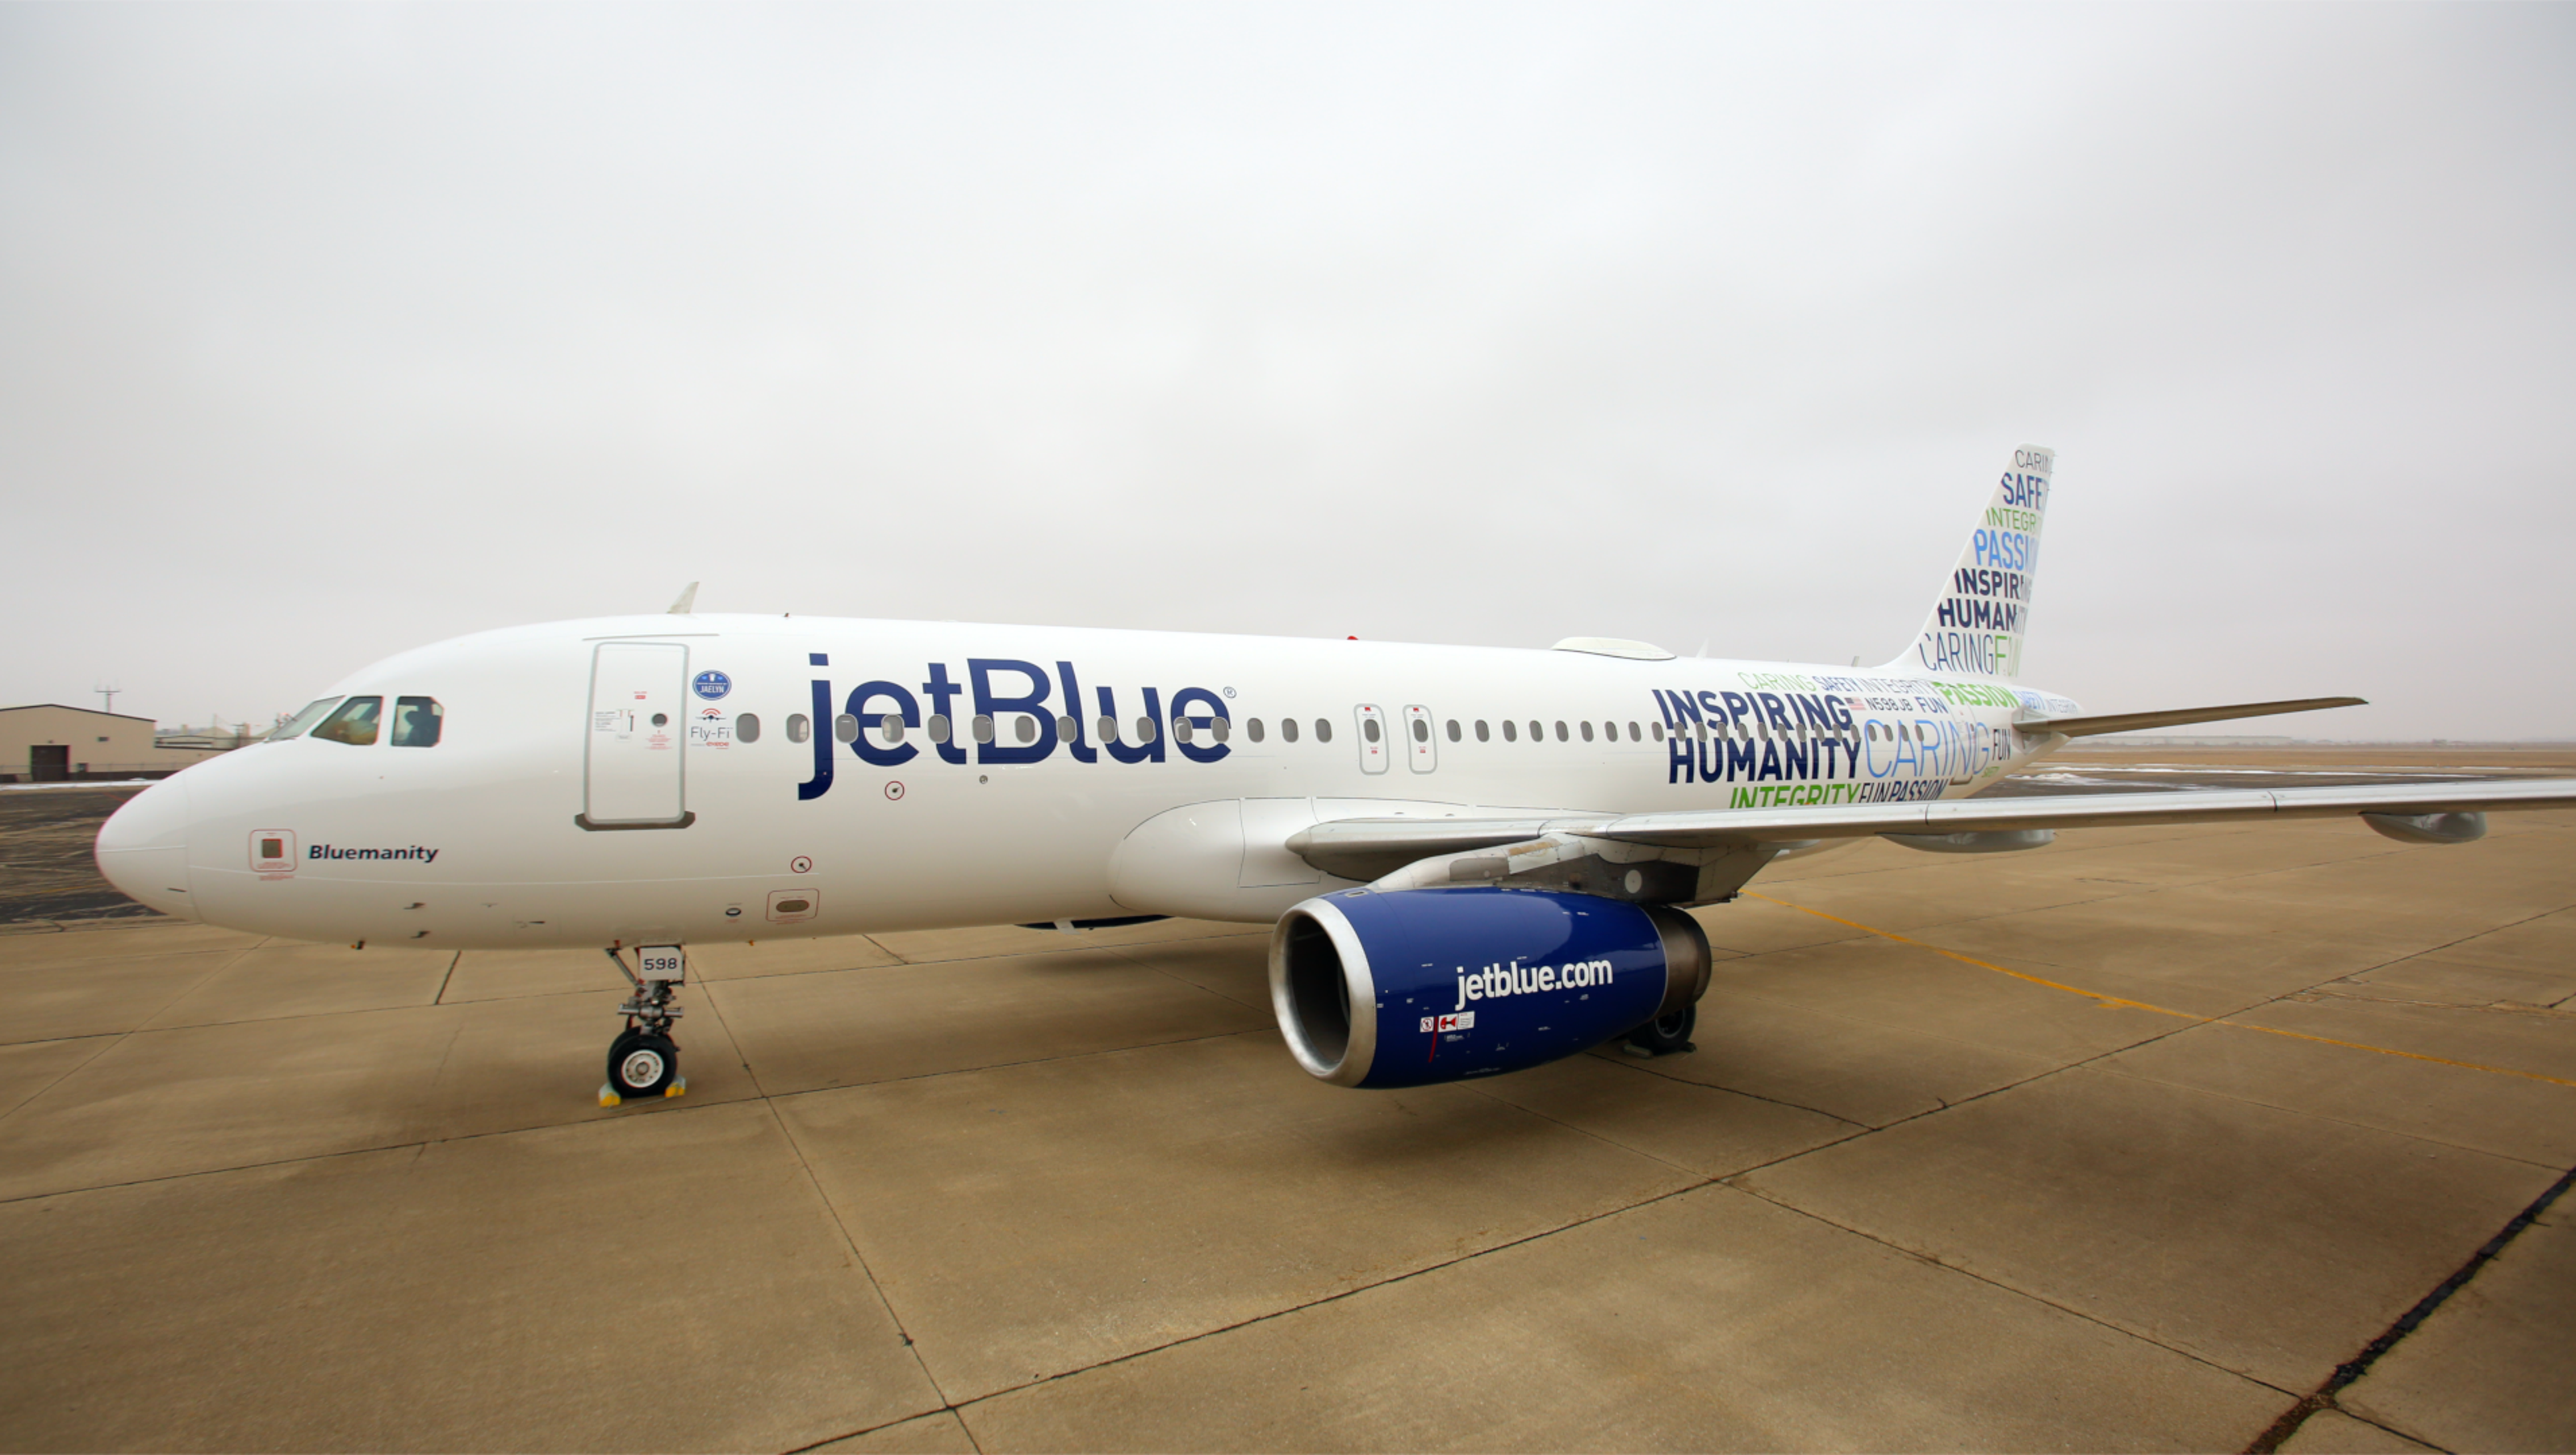 JetBlue unveils new 'Bluemanity' livery3200 x 1800